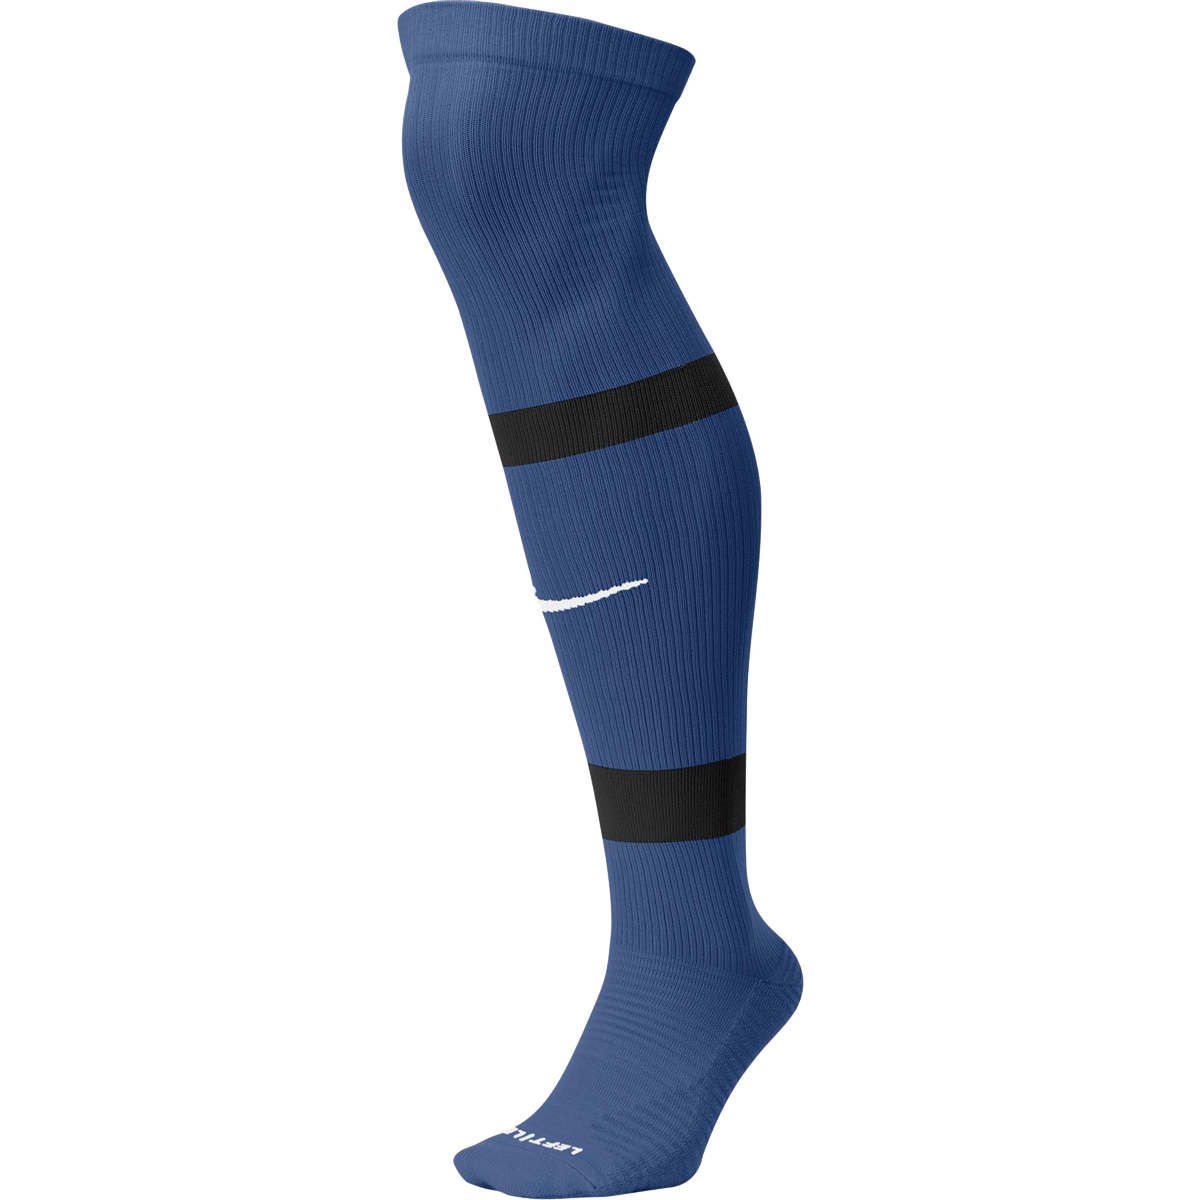 Nike MatchFit Knee High tmavě modrá EU 42/46